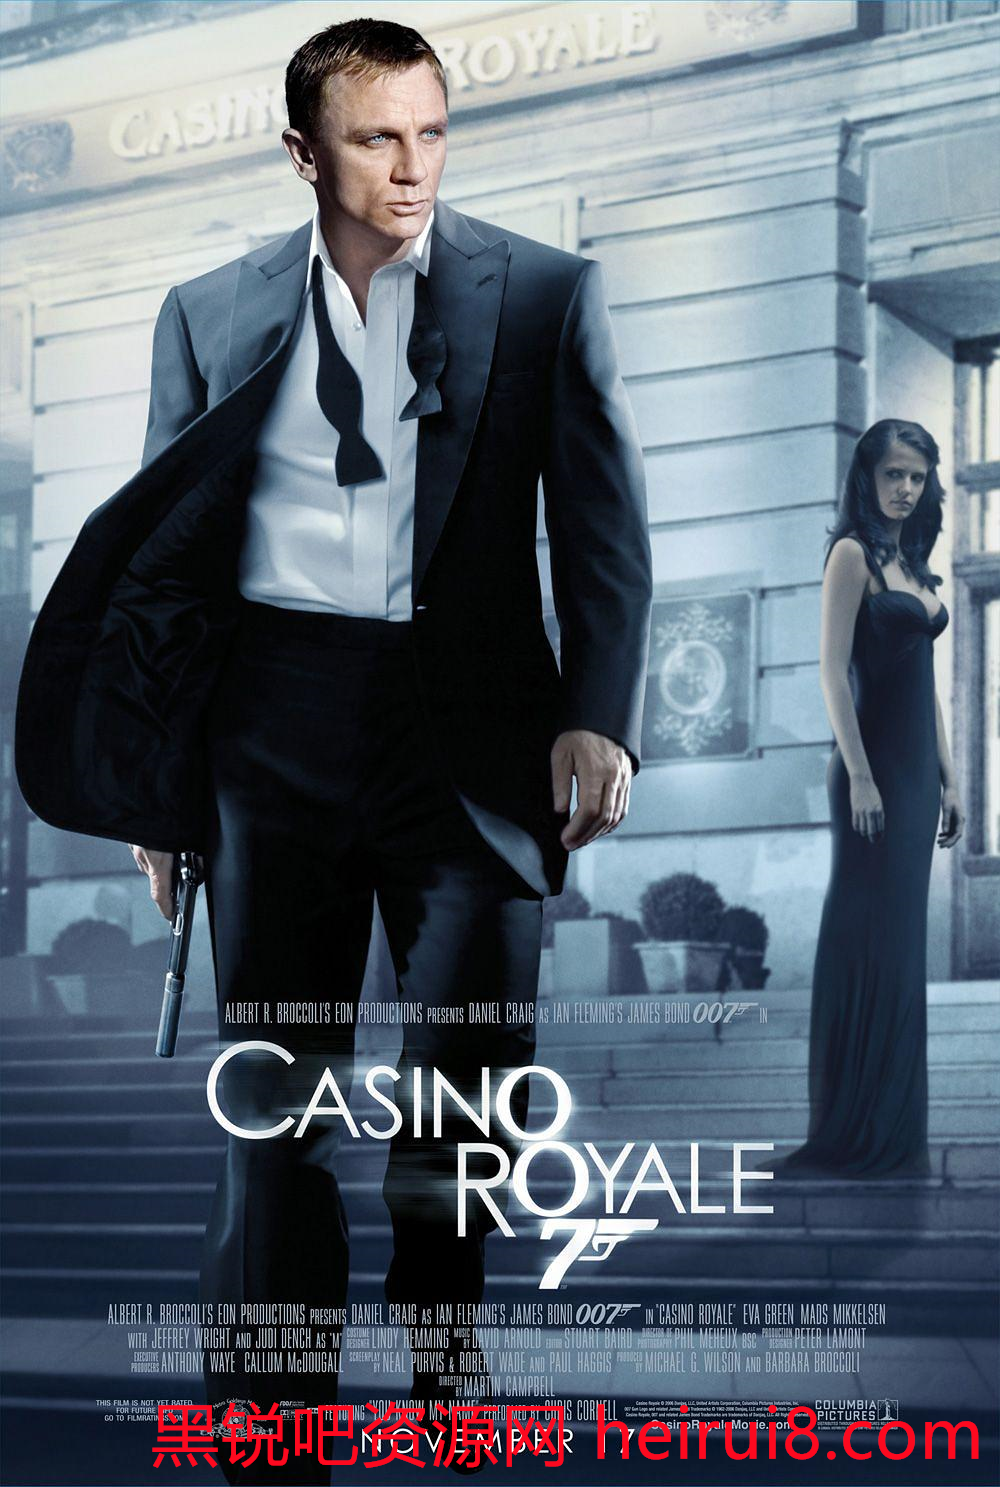 [BD-4K] 007:大战皇家赌场Casino.Royale.2006.2160p